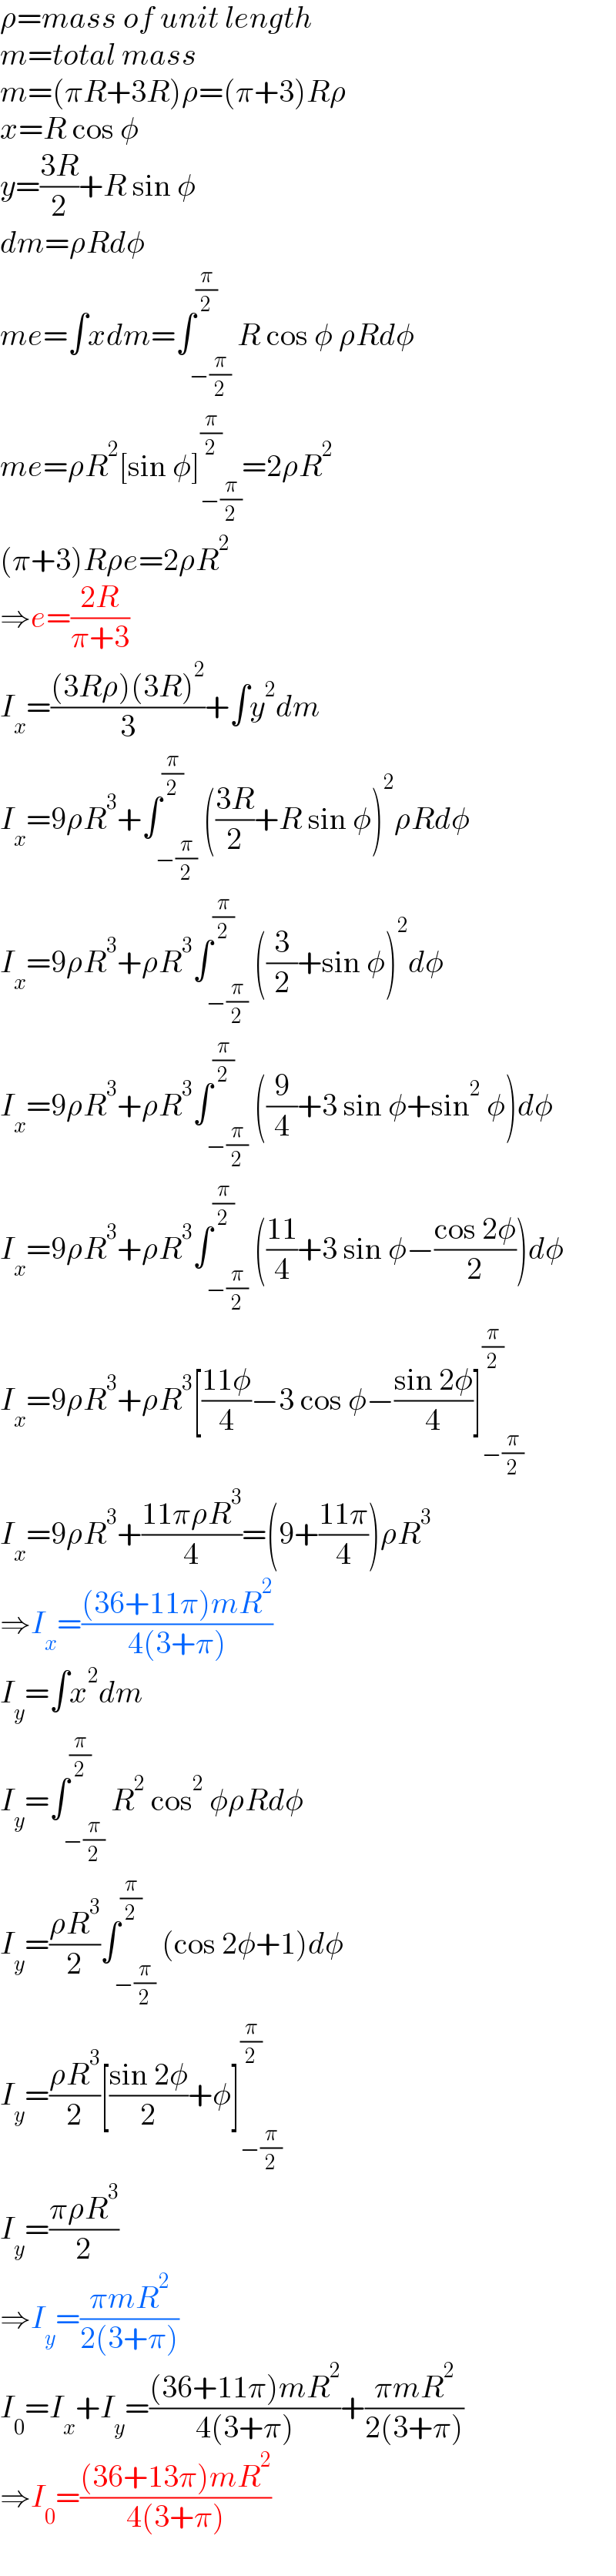 ρ=mass of unit length  m=total mass  m=(πR+3R)ρ=(π+3)Rρ  x=R cos φ  y=((3R)/2)+R sin φ  dm=ρRdφ  me=∫xdm=∫_(−(π/2)) ^(π/2) R cos φ ρRdφ  me=ρR^2 [sin φ]_(−(π/2)) ^(π/2) =2ρR^2   (π+3)Rρe=2ρR^2   ⇒e=((2R)/(π+3))  I_x =(((3Rρ)(3R)^2 )/3)+∫y^2 dm  I_x =9ρR^3 +∫_(−(π/2)) ^(π/2) (((3R)/2)+R sin φ)^2 ρRdφ  I_x =9ρR^3 +ρR^3 ∫_(−(π/2)) ^(π/2) ((3/2)+sin φ)^2 dφ  I_x =9ρR^3 +ρR^3 ∫_(−(π/2)) ^(π/2) ((9/4)+3 sin φ+sin^2  φ)dφ  I_x =9ρR^3 +ρR^3 ∫_(−(π/2)) ^(π/2) (((11)/4)+3 sin φ−((cos 2φ)/2))dφ  I_x =9ρR^3 +ρR^3 [((11φ)/4)−3 cos φ−((sin 2φ)/4)]_(−(π/2)) ^(π/2)   I_x =9ρR^3 +((11πρR^3 )/4)=(9+((11π)/4))ρR^3   ⇒I_x =(((36+11π)mR^2 )/(4(3+π)))  I_y =∫x^2 dm  I_y =∫_(−(π/2)) ^(π/2) R^2  cos^2  φρRdφ  I_y =((ρR^3 )/2)∫_(−(π/2)) ^(π/2) (cos 2φ+1)dφ  I_y =((ρR^3 )/2)[((sin 2φ)/2)+φ]_(−(π/2)) ^(π/2)   I_y =((πρR^3 )/2)  ⇒I_y =((πmR^2 )/(2(3+π)))  I_0 =I_x +I_y =(((36+11π)mR^2 )/(4(3+π)))+((πmR^2 )/(2(3+π)))  ⇒I_0 =(((36+13π)mR^2 )/(4(3+π)))  